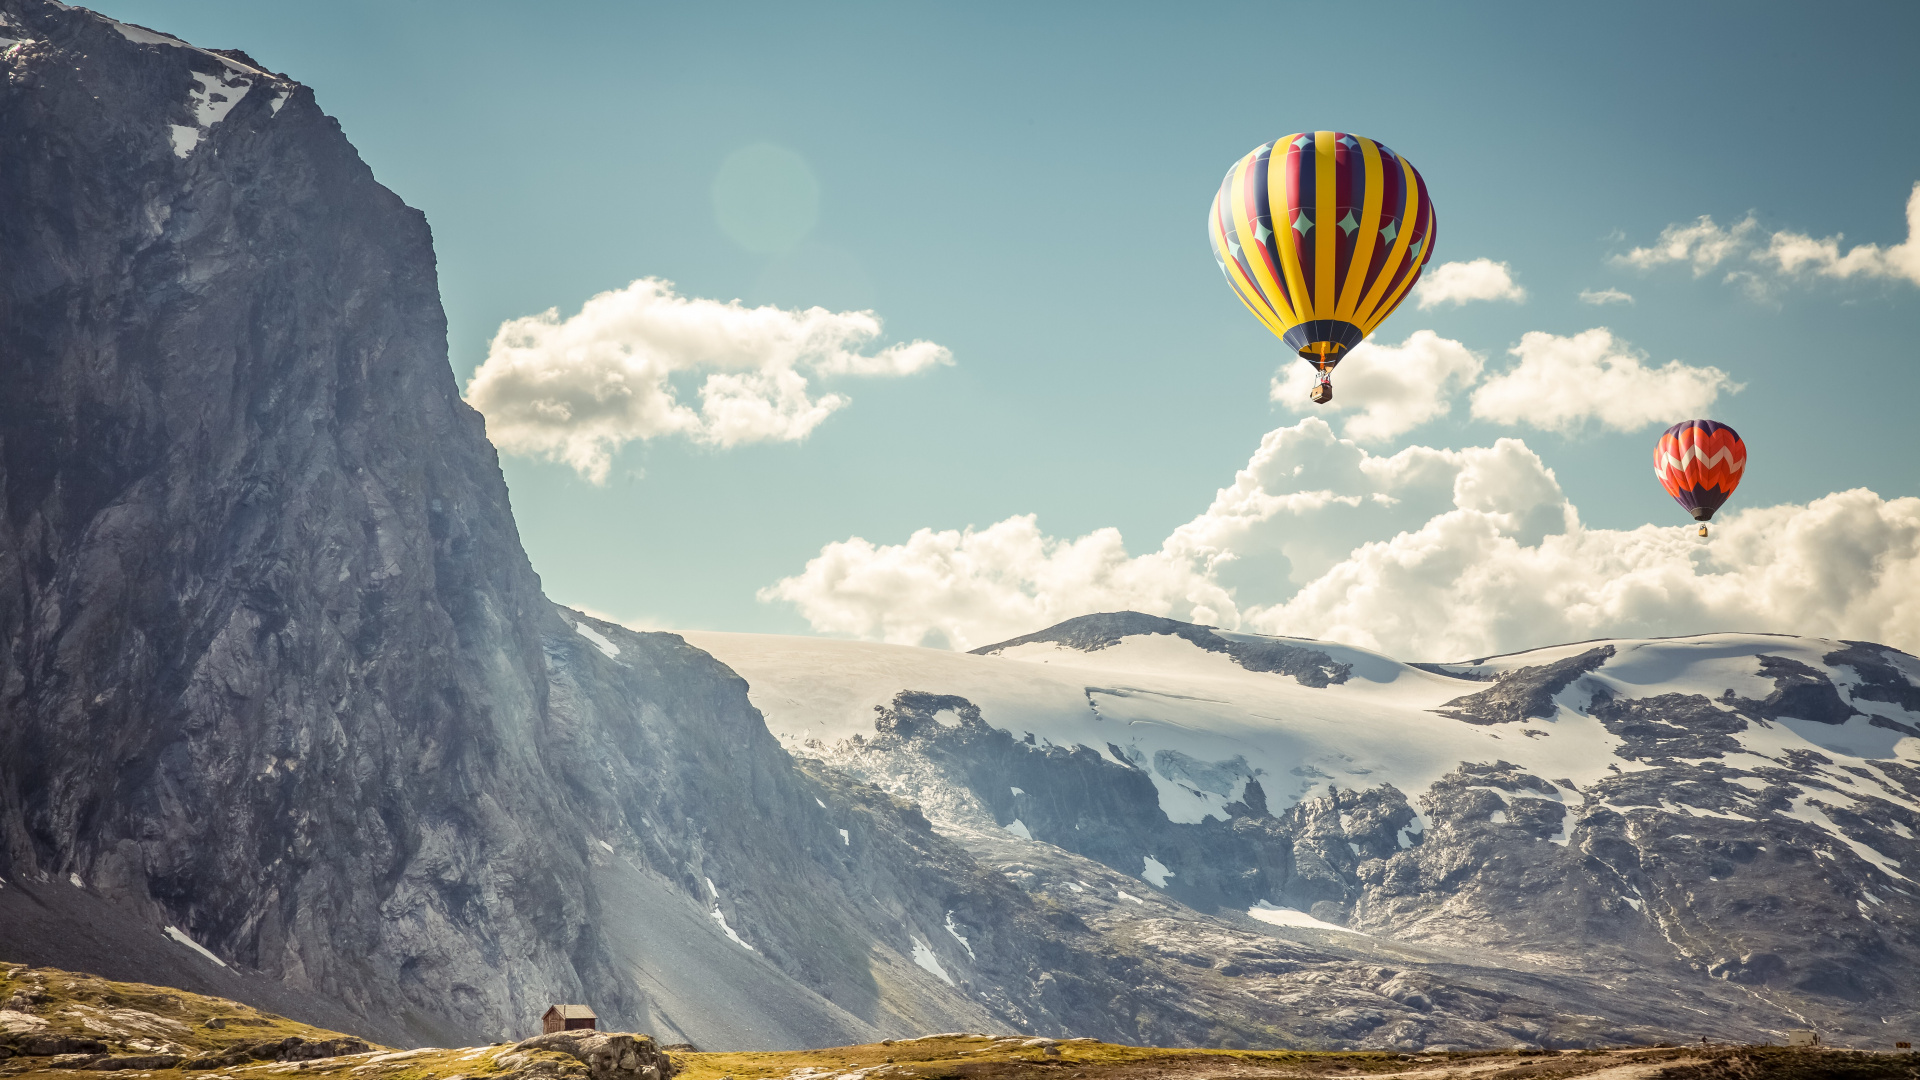 热气球, 山脉, 极限运动, 气囊, 旅游业 壁纸 1920x1080 允许